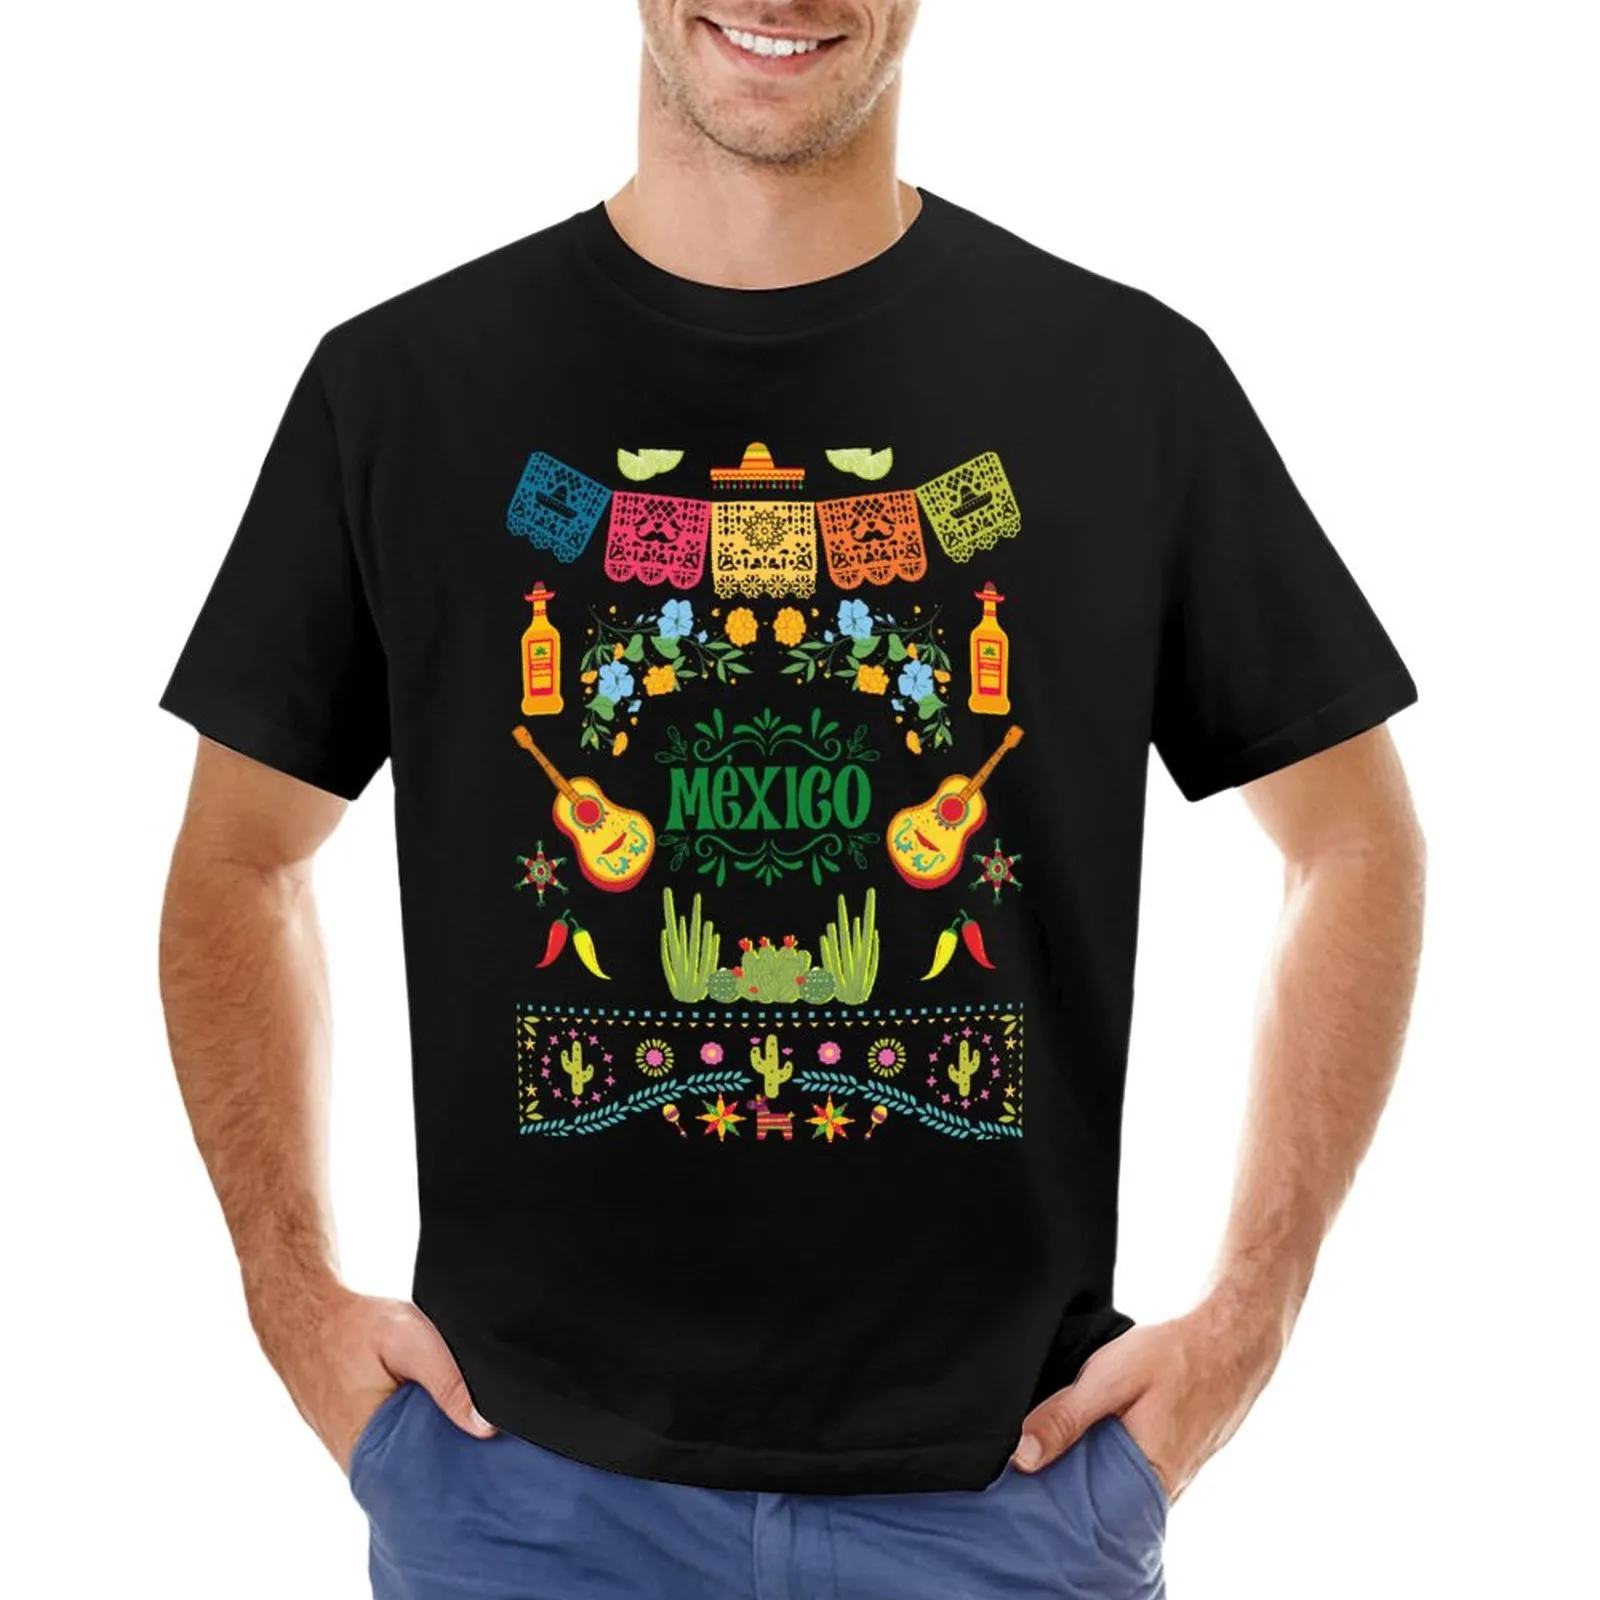 Camiseta do México Camiseta Dia dos Dead Summer Man Roupas Camisas Graphic Tees Woman mens de camiseta ropa hombre camisetas tops